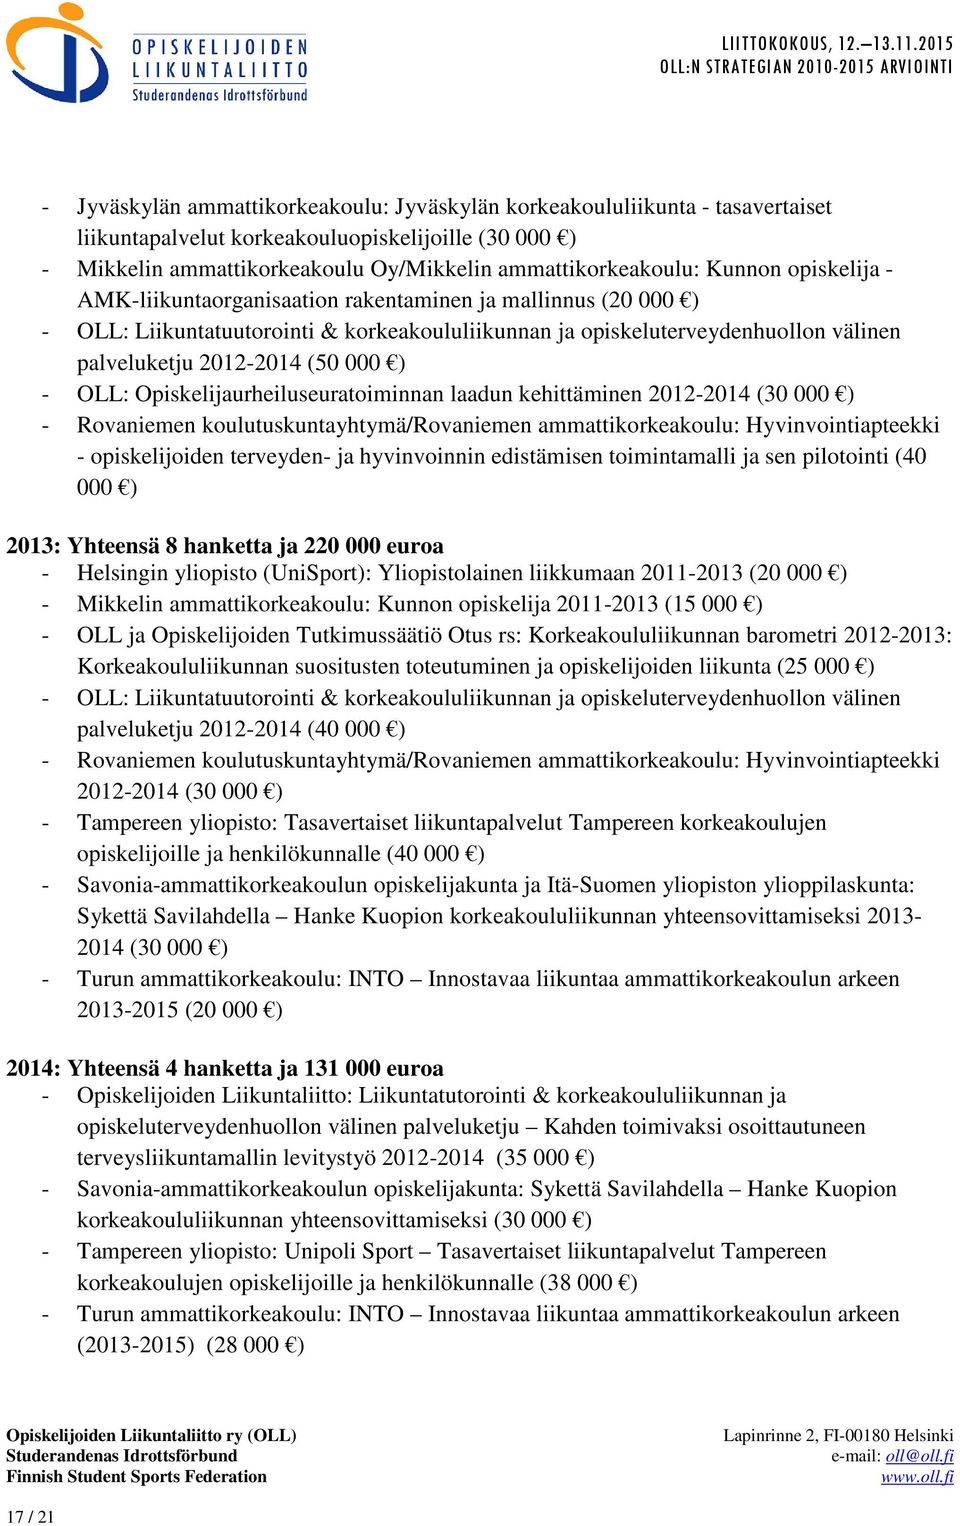 ) - OLL: Opiskelijaurheiluseuratoiminnan laadun kehittäminen 2012-2014 (30 000 ) - Rovaniemen koulutuskuntayhtymä/rovaniemen ammattikorkeakoulu: Hyvinvointiapteekki - opiskelijoiden terveyden- ja